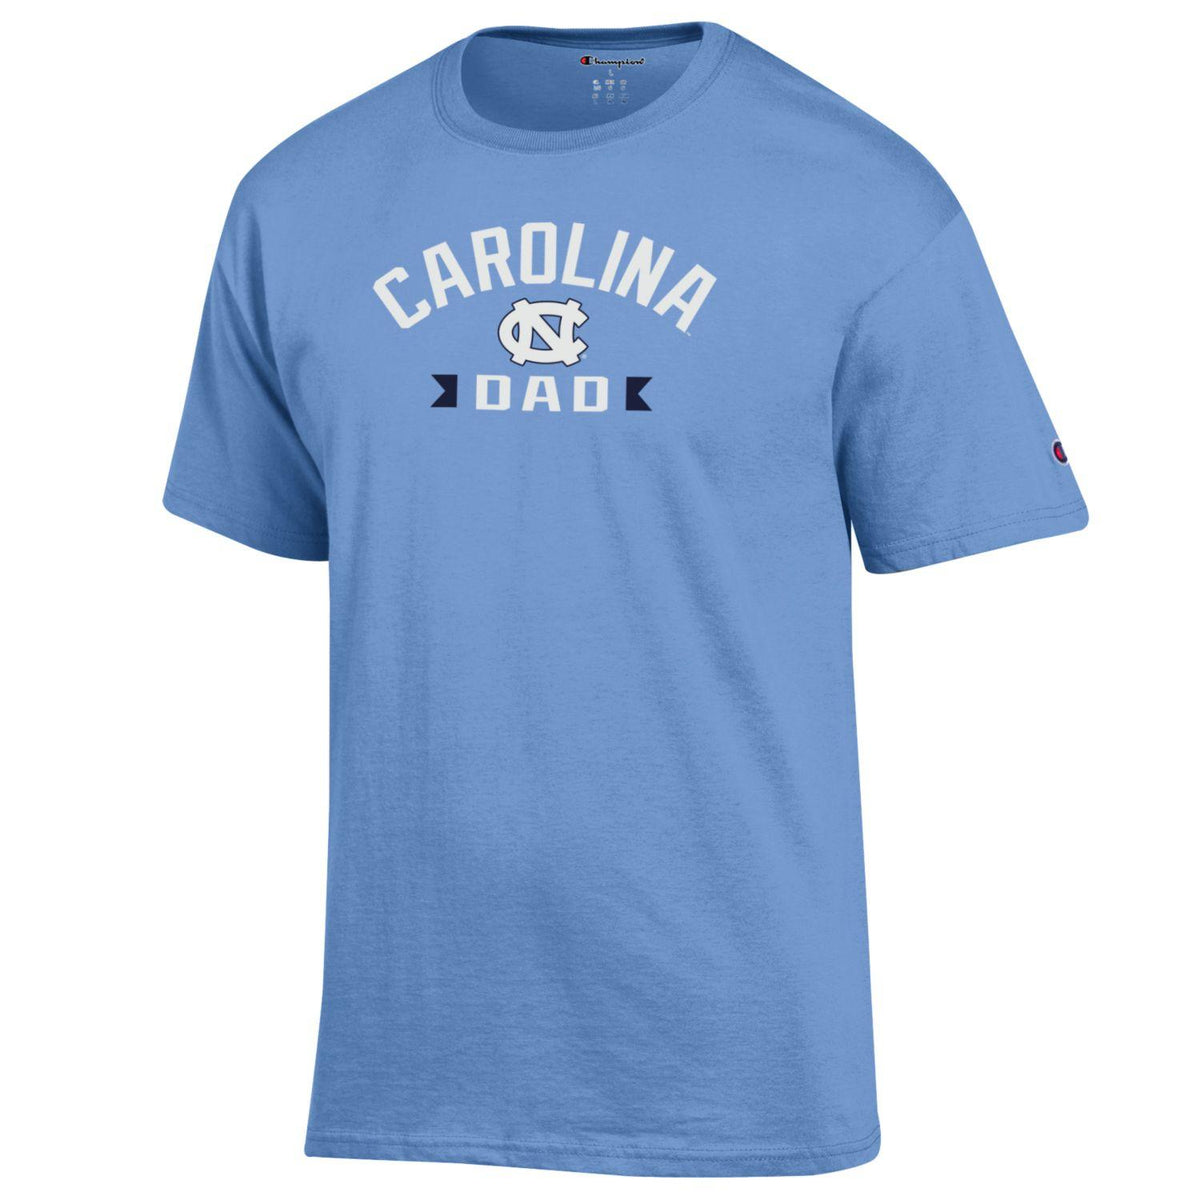 Champion - Carolina Dad T-Shirt